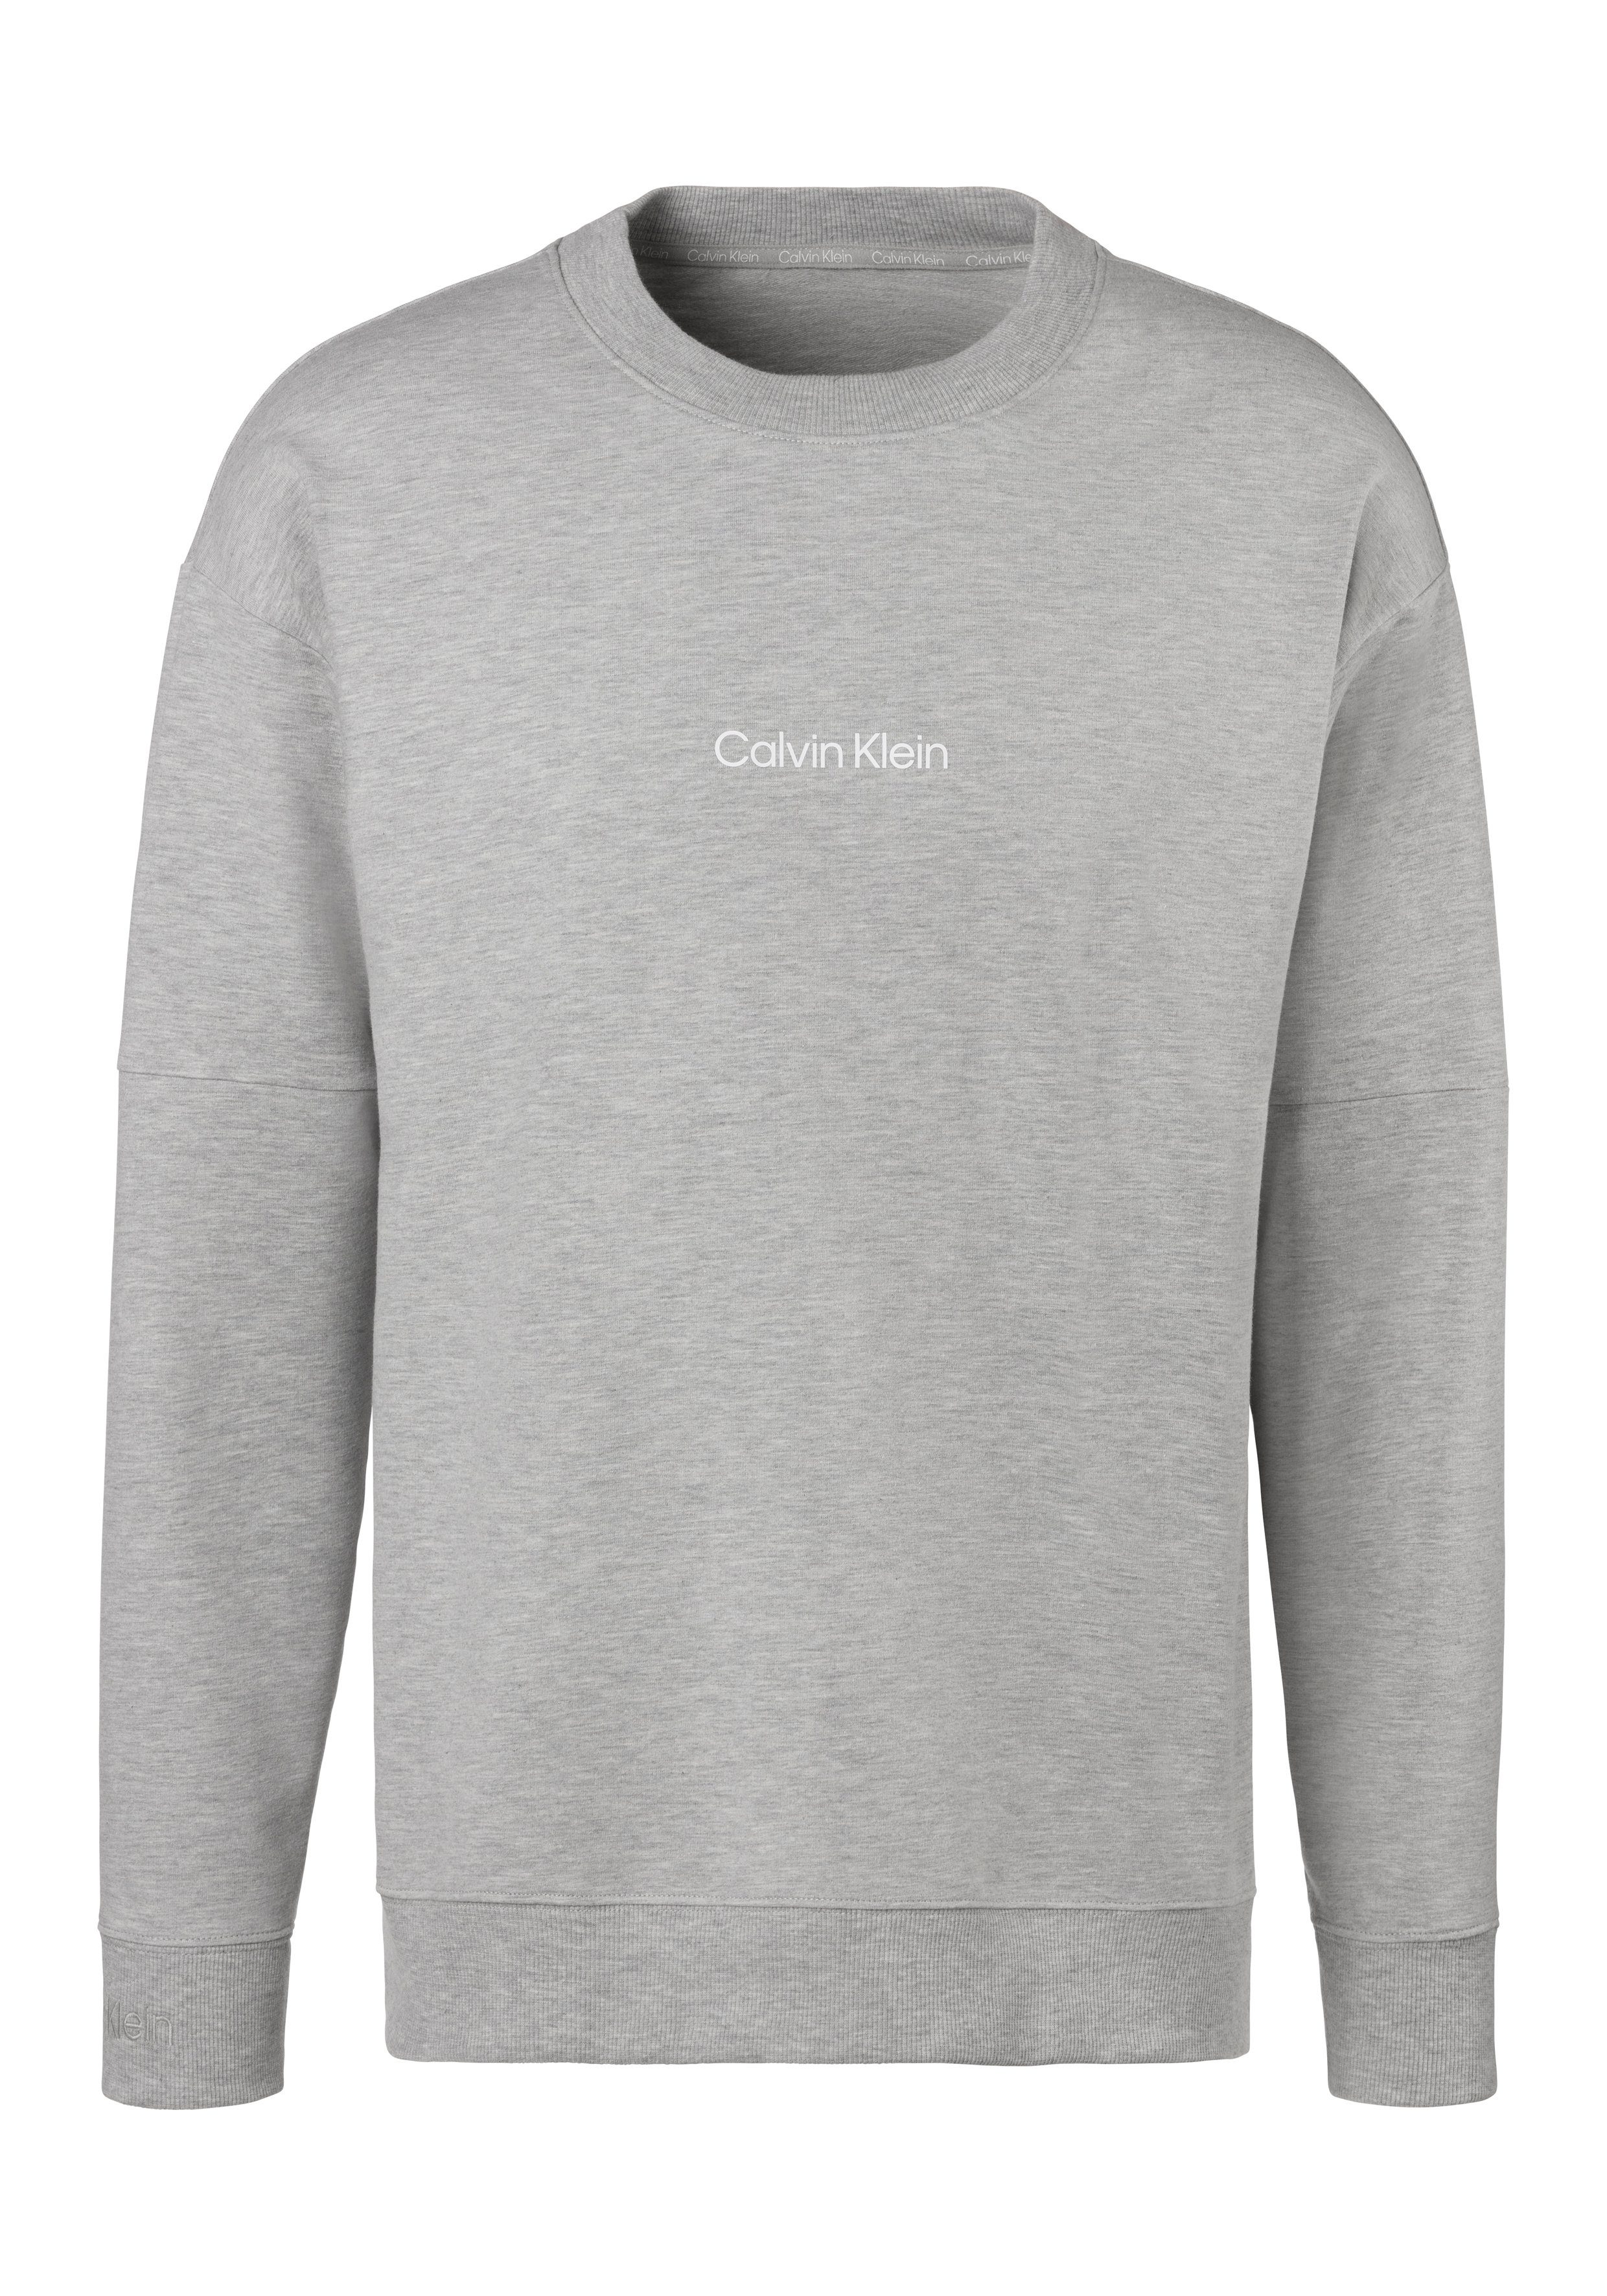 Calvin Klein Underwear Logodruck grau-meliert Sweatshirt mit vorn